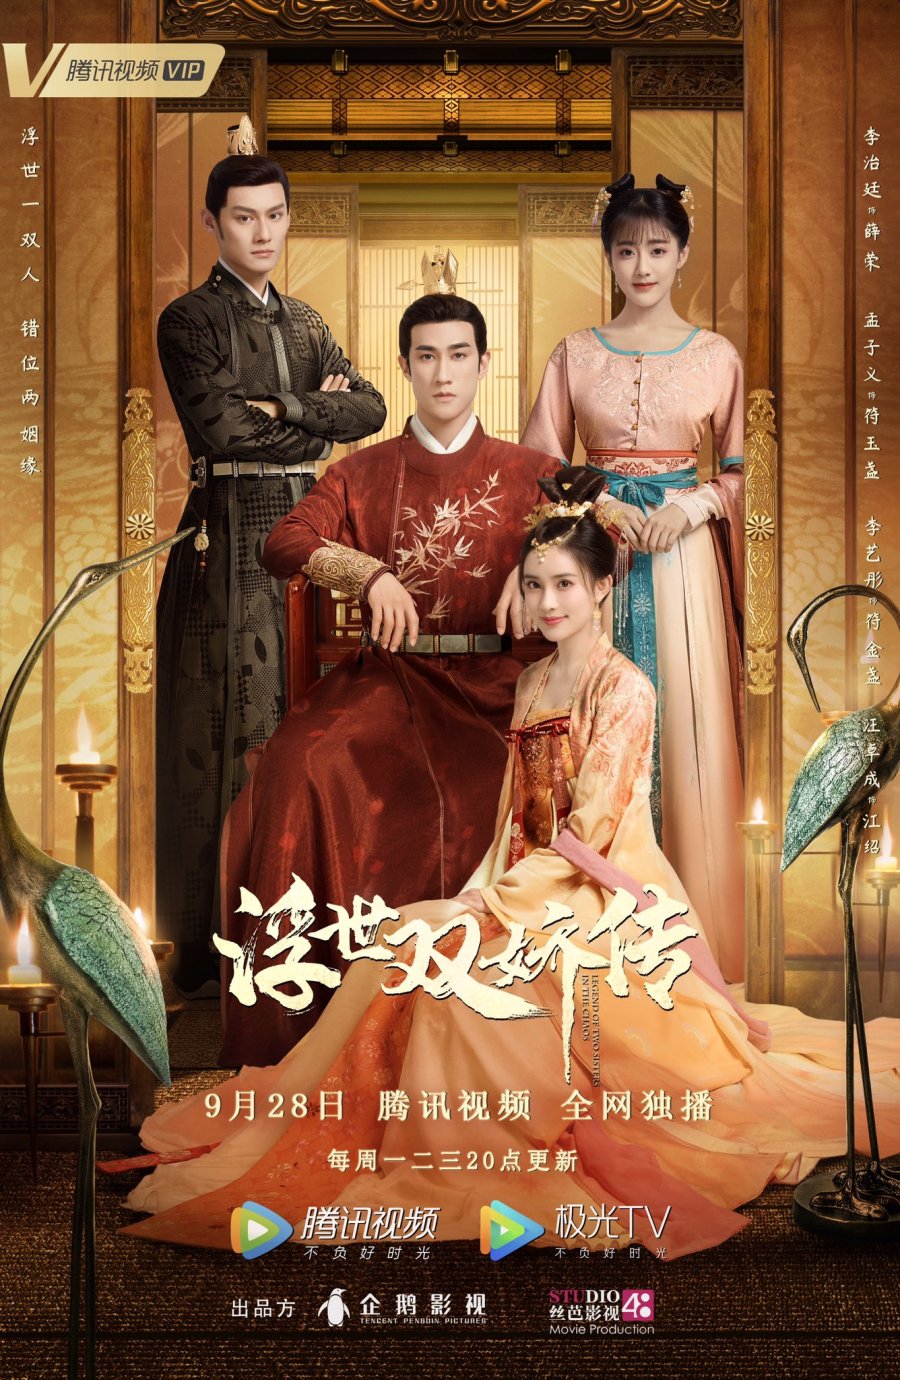 harper bazaar nhung bo phim cua manh tu nghia 5 - 28 phim hậu cung Trung Quốc hay nhất dành cho khán giả mê cung đấu